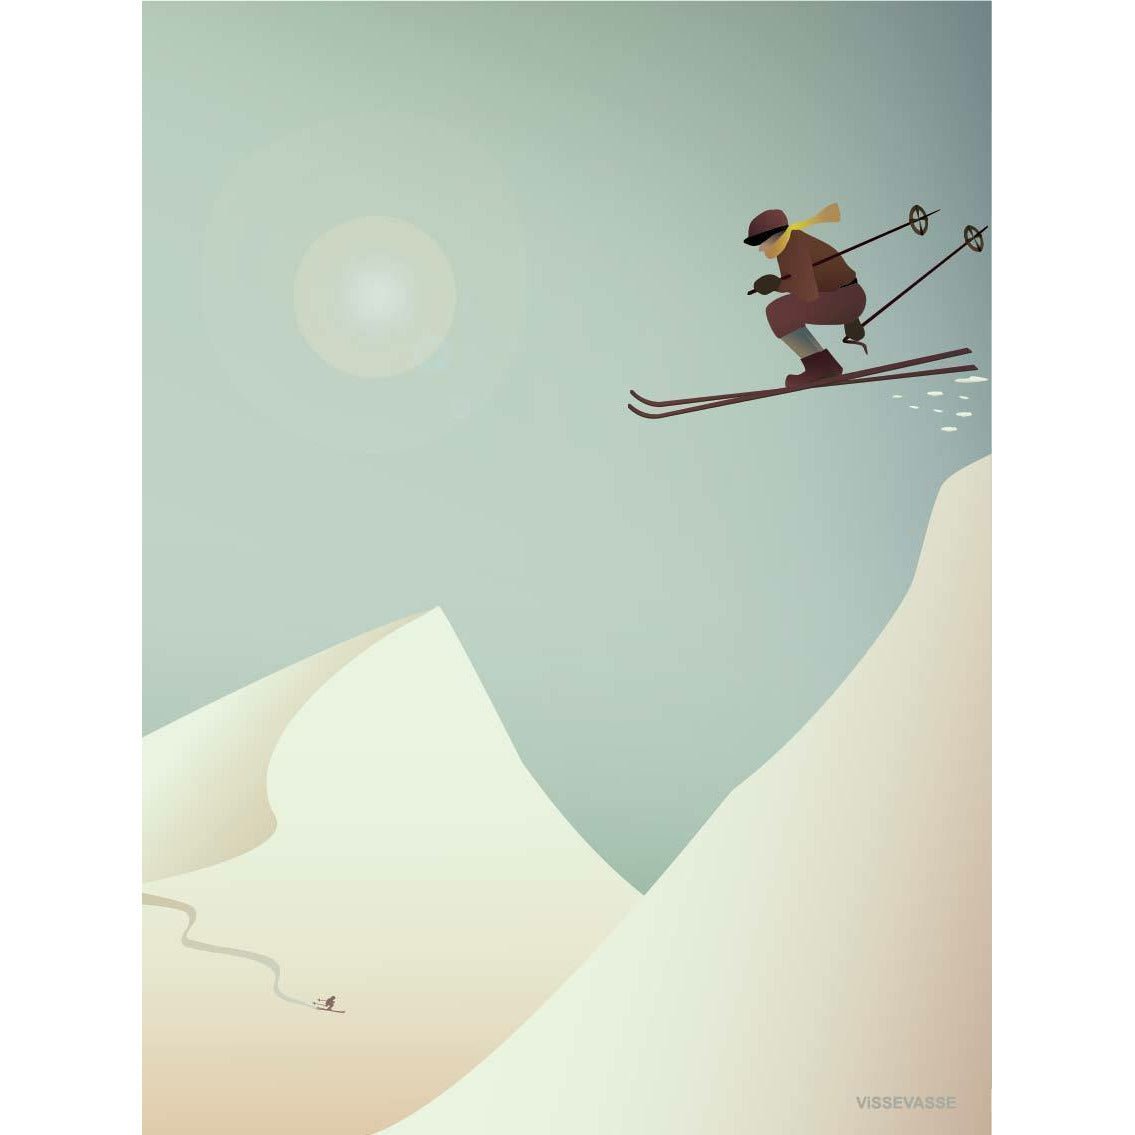 Plakat narciarski Vissevasse, 50 x 70 cm